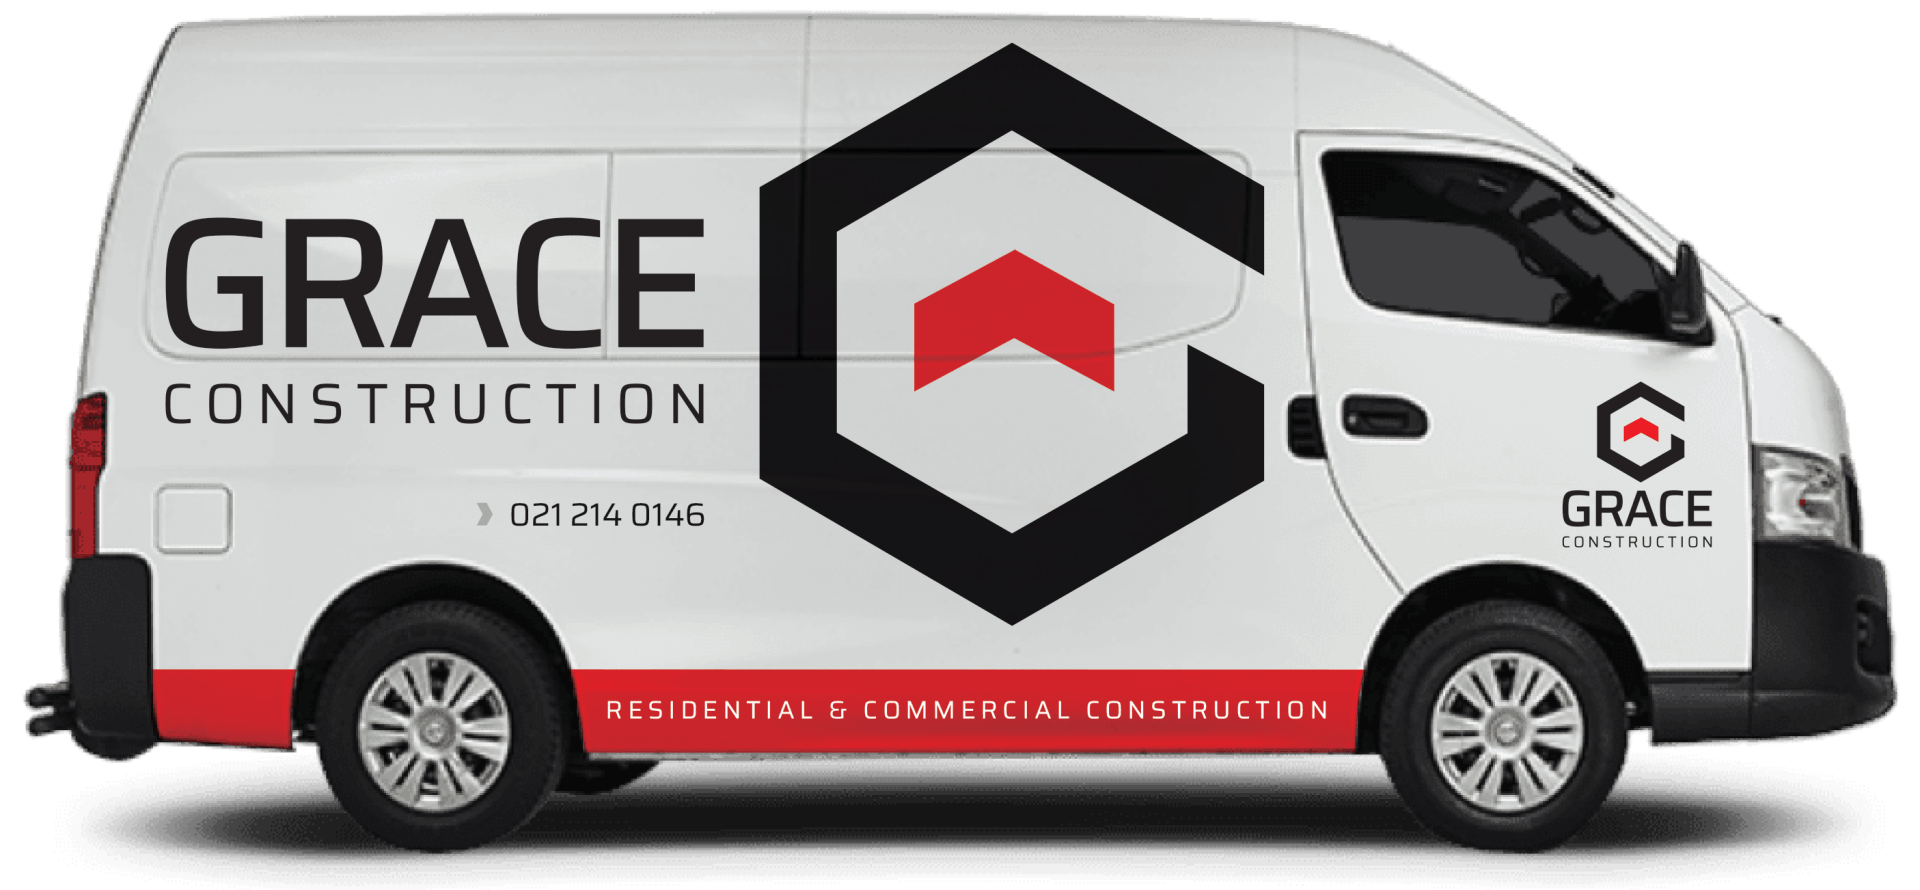 Grace Construction Van